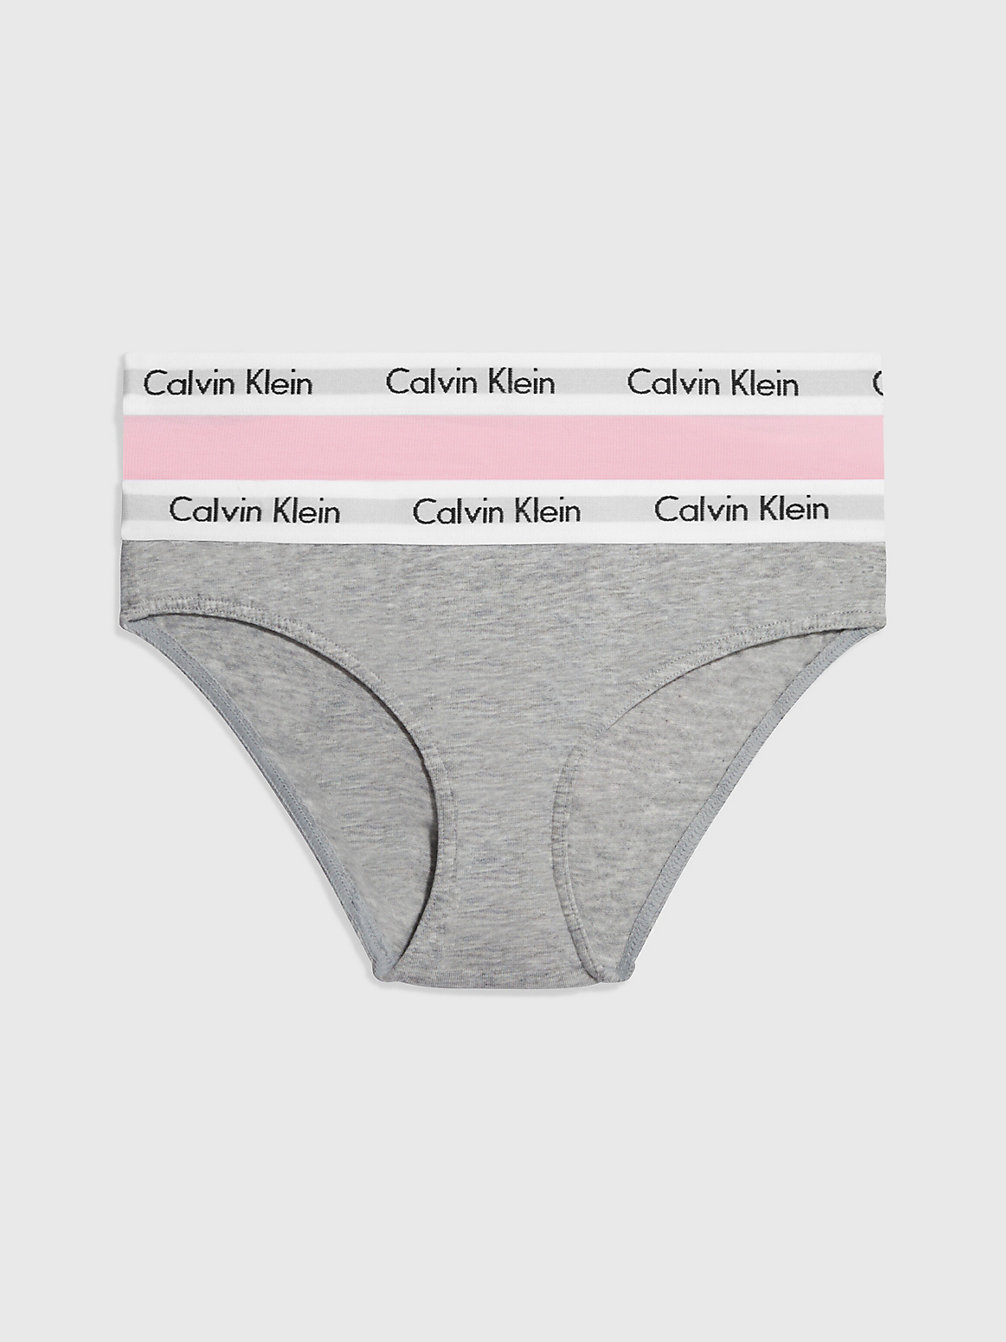 GREY HTR/UNIQUE 2 Pack Girls Bikini Briefs - Modern Cotton undefined girls Calvin Klein